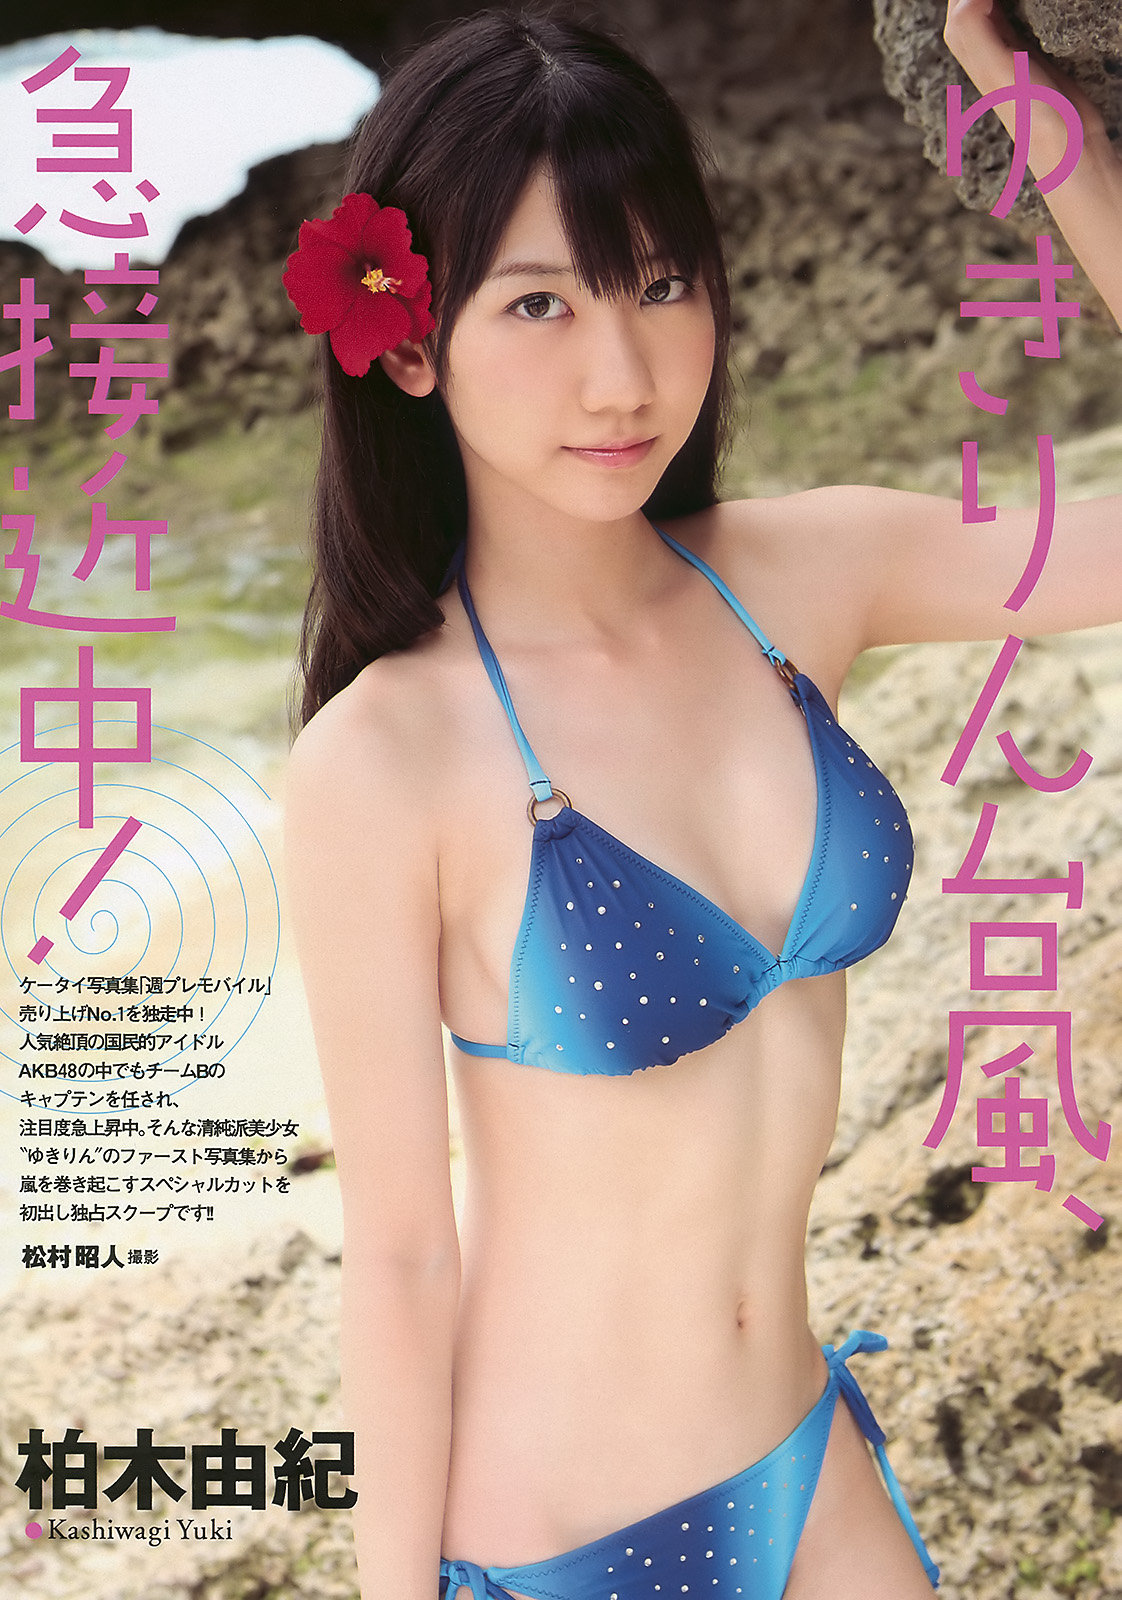 Kashiwagi Yuki,Magazine.